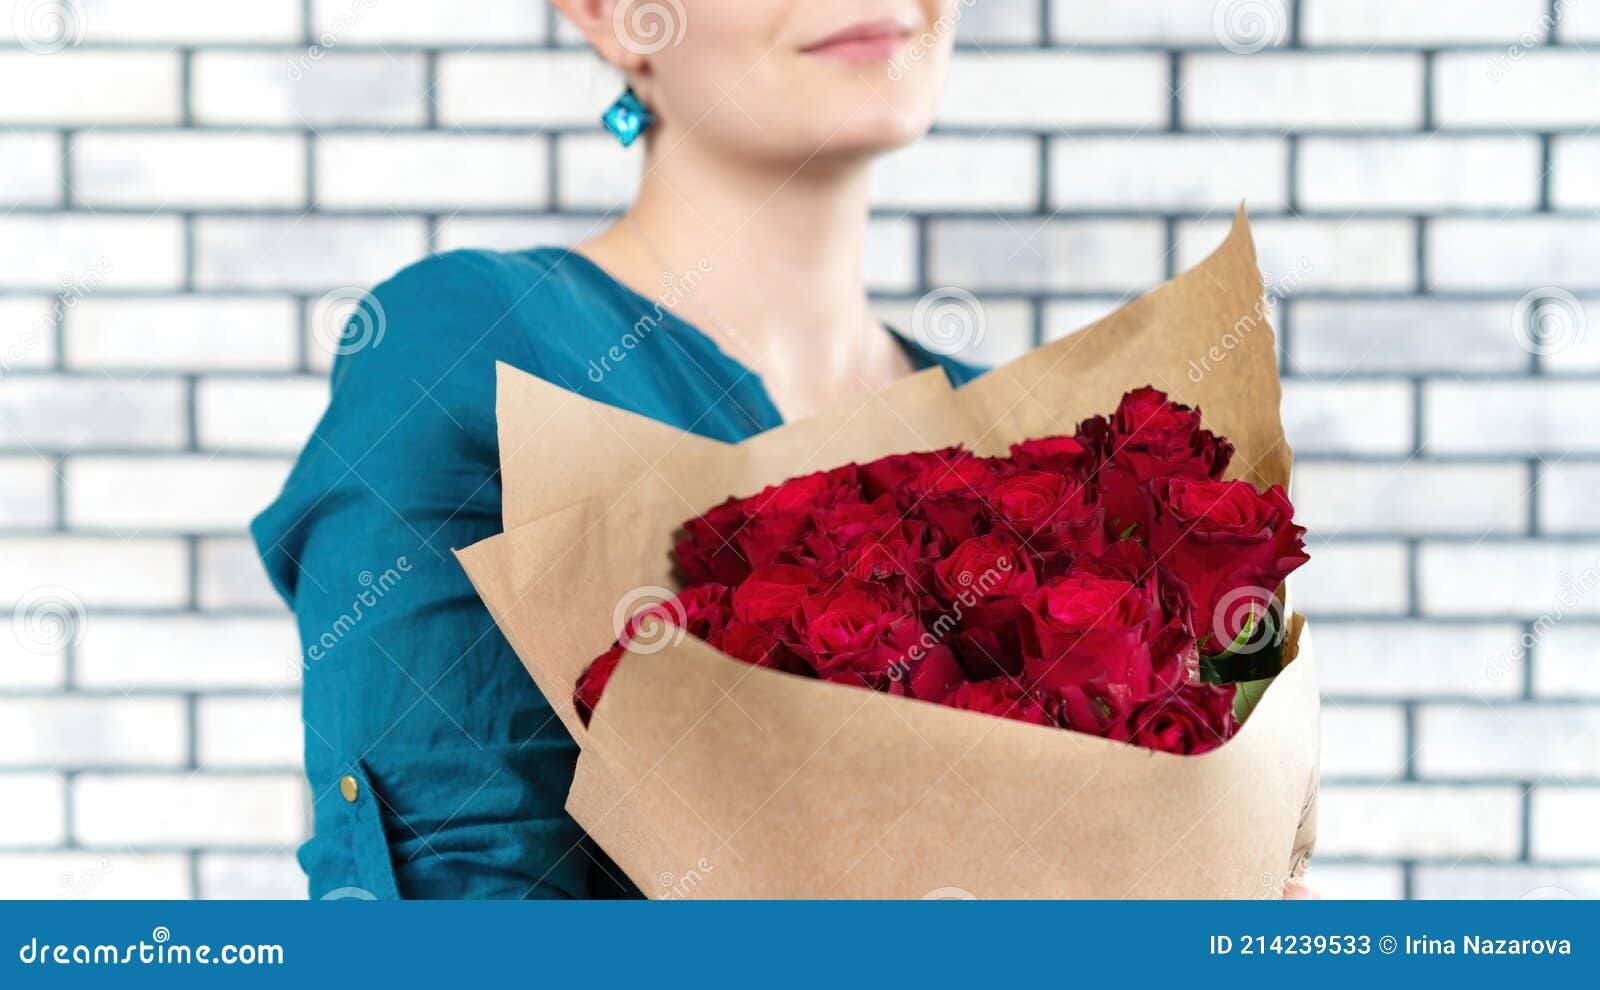 Una Guapa Chica Con Camisa Azul Sostiene Lujoso Ramo De Rosas Rojas Envuelto En Papel Artesanal Y Sonríe. Combinación De Rojo Y Imagen de archivo - Imagen de primer, hermoso: 214239533